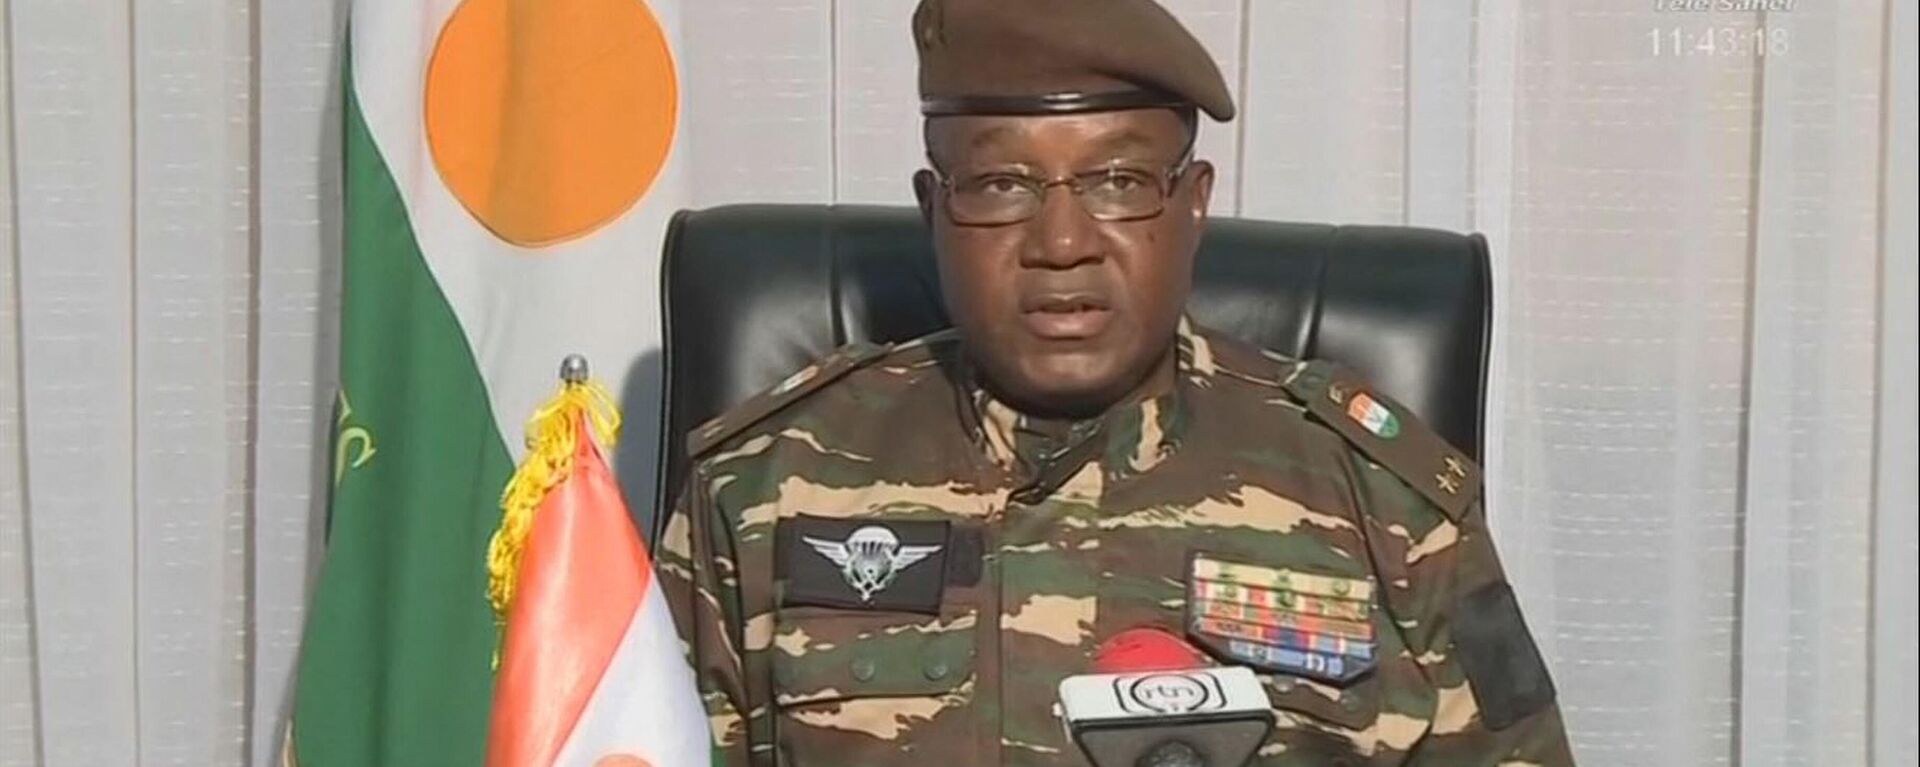 El general rebelde Omar Abdourahamane Tchiani que se proclamó como líder de la junta golpista en Níger, el 28 de julio 2023 - Sputnik Mundo, 1920, 28.07.2023